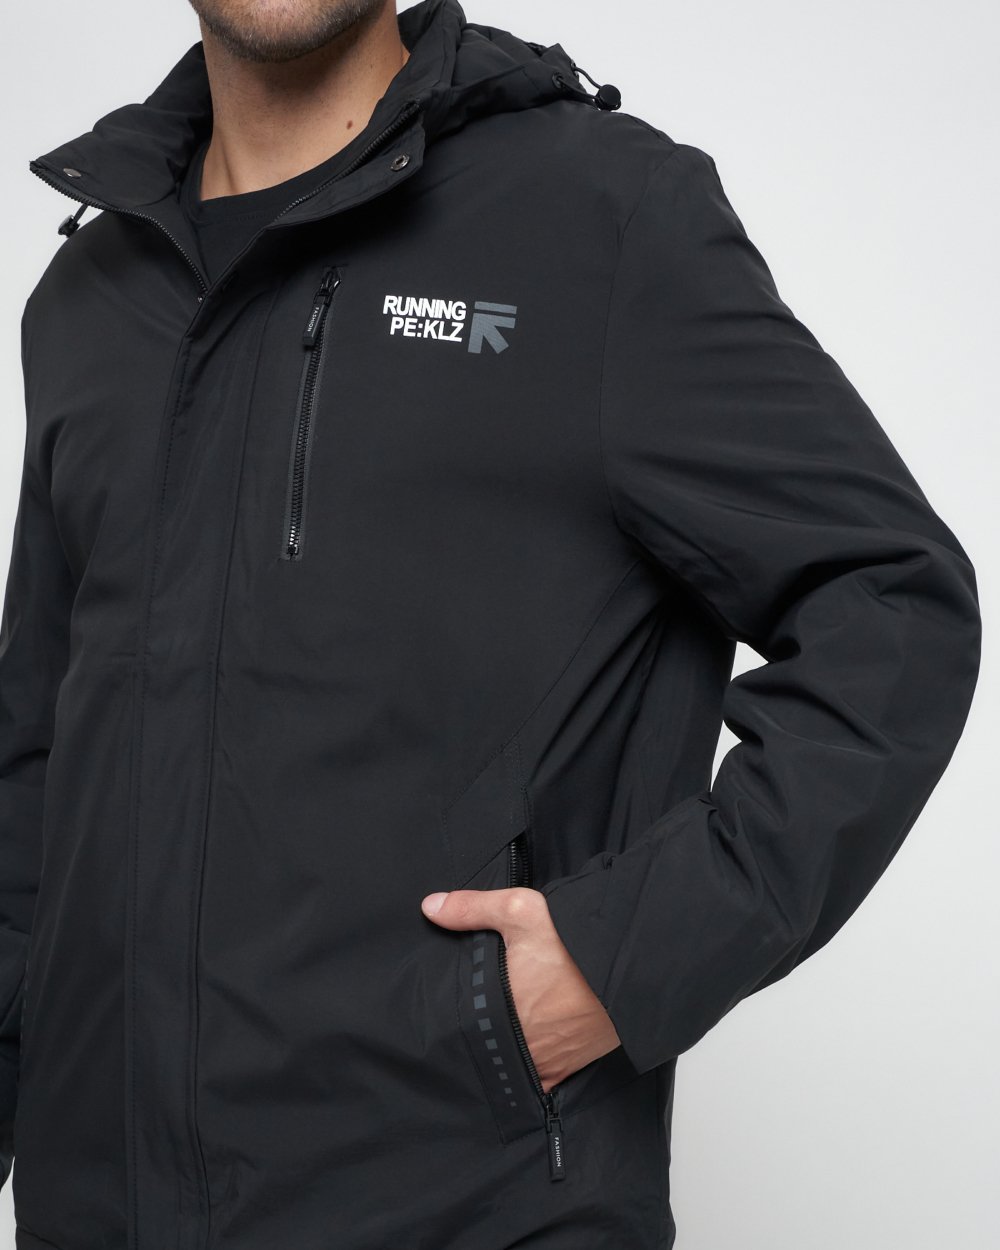 Купить куртку мужскую большого размера оптом от производителя недорого в Москве 88676Ch 1